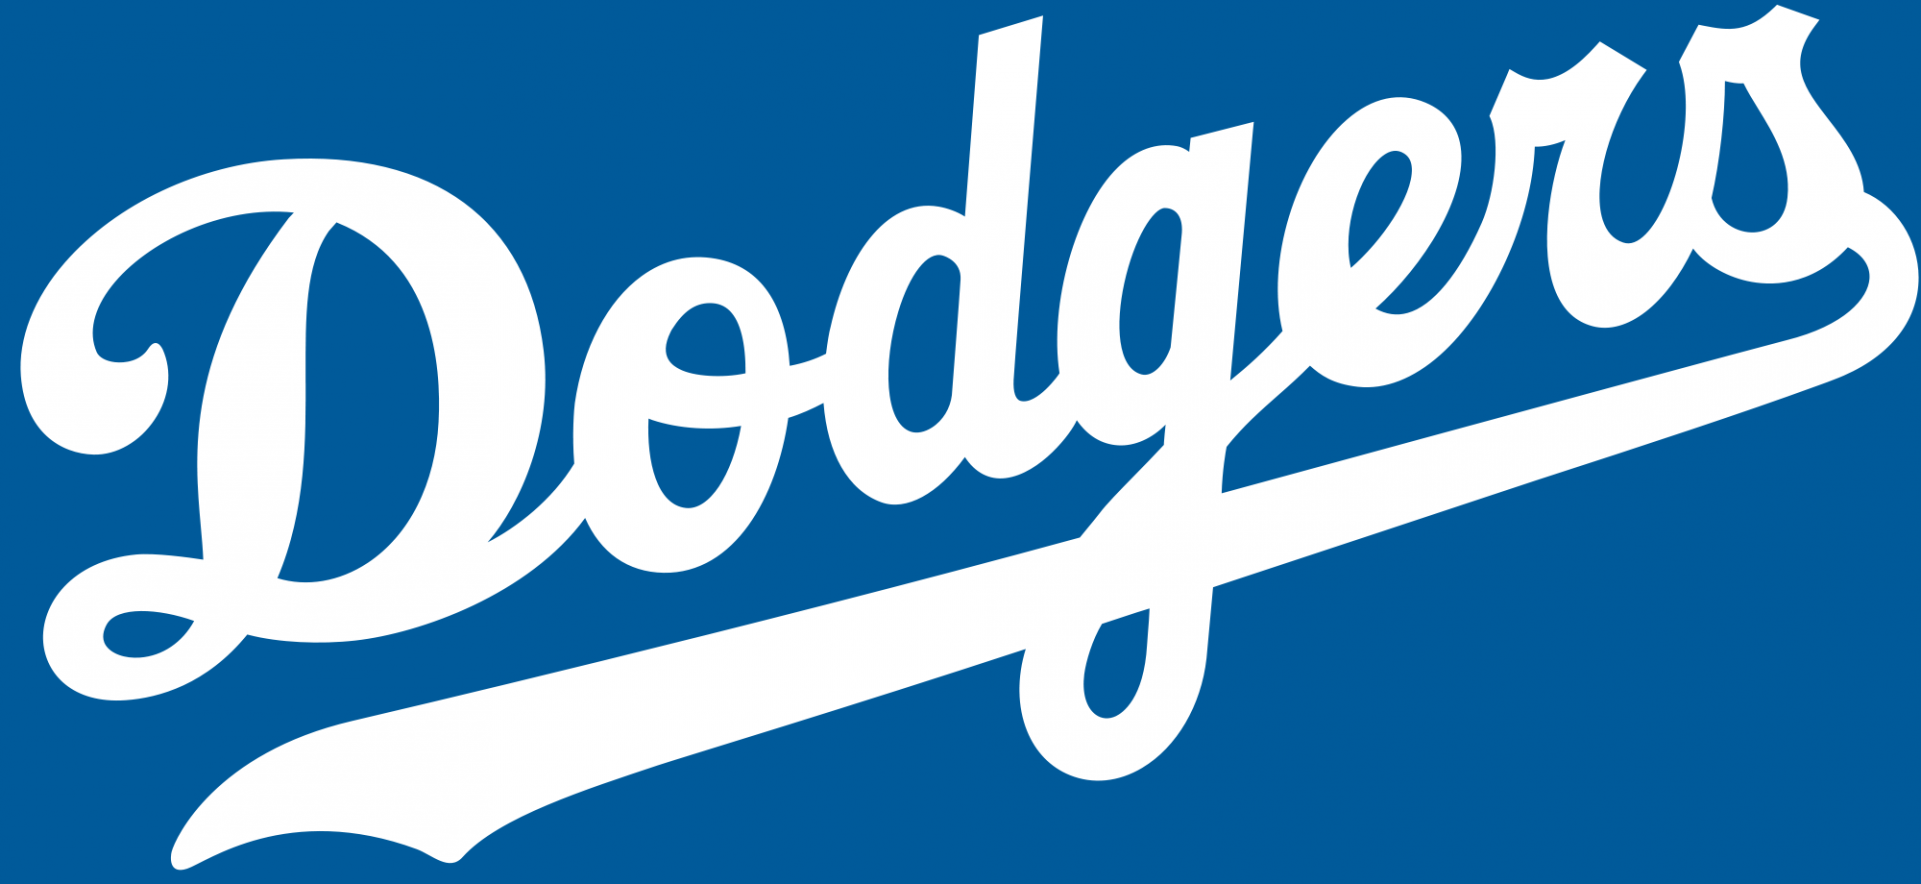 La Dodgers - Forum | Dafont.com